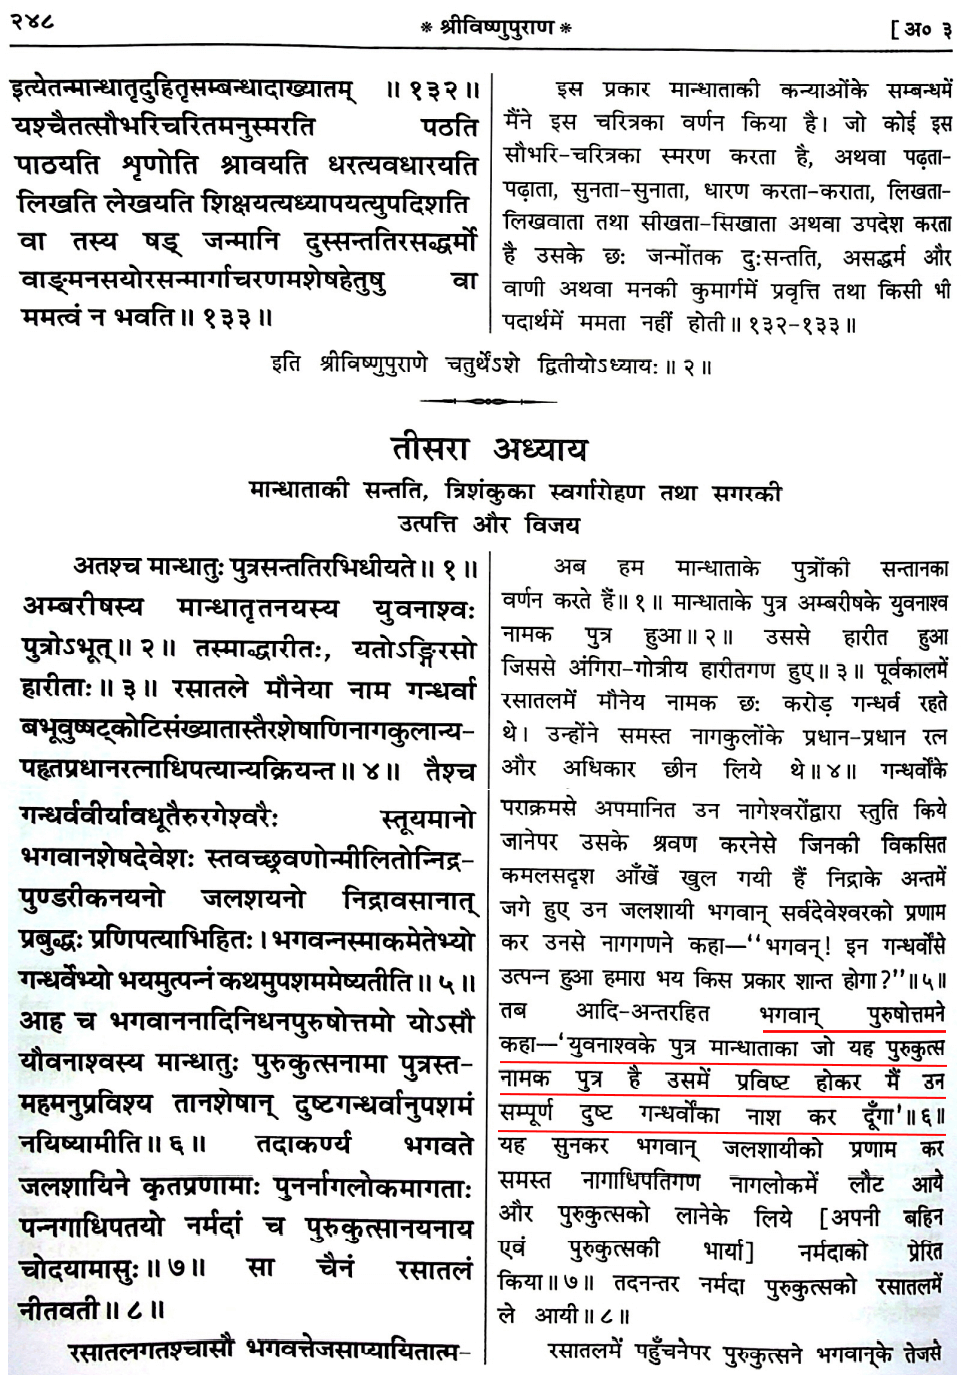 Vishnu Purana Chaturth Ansh